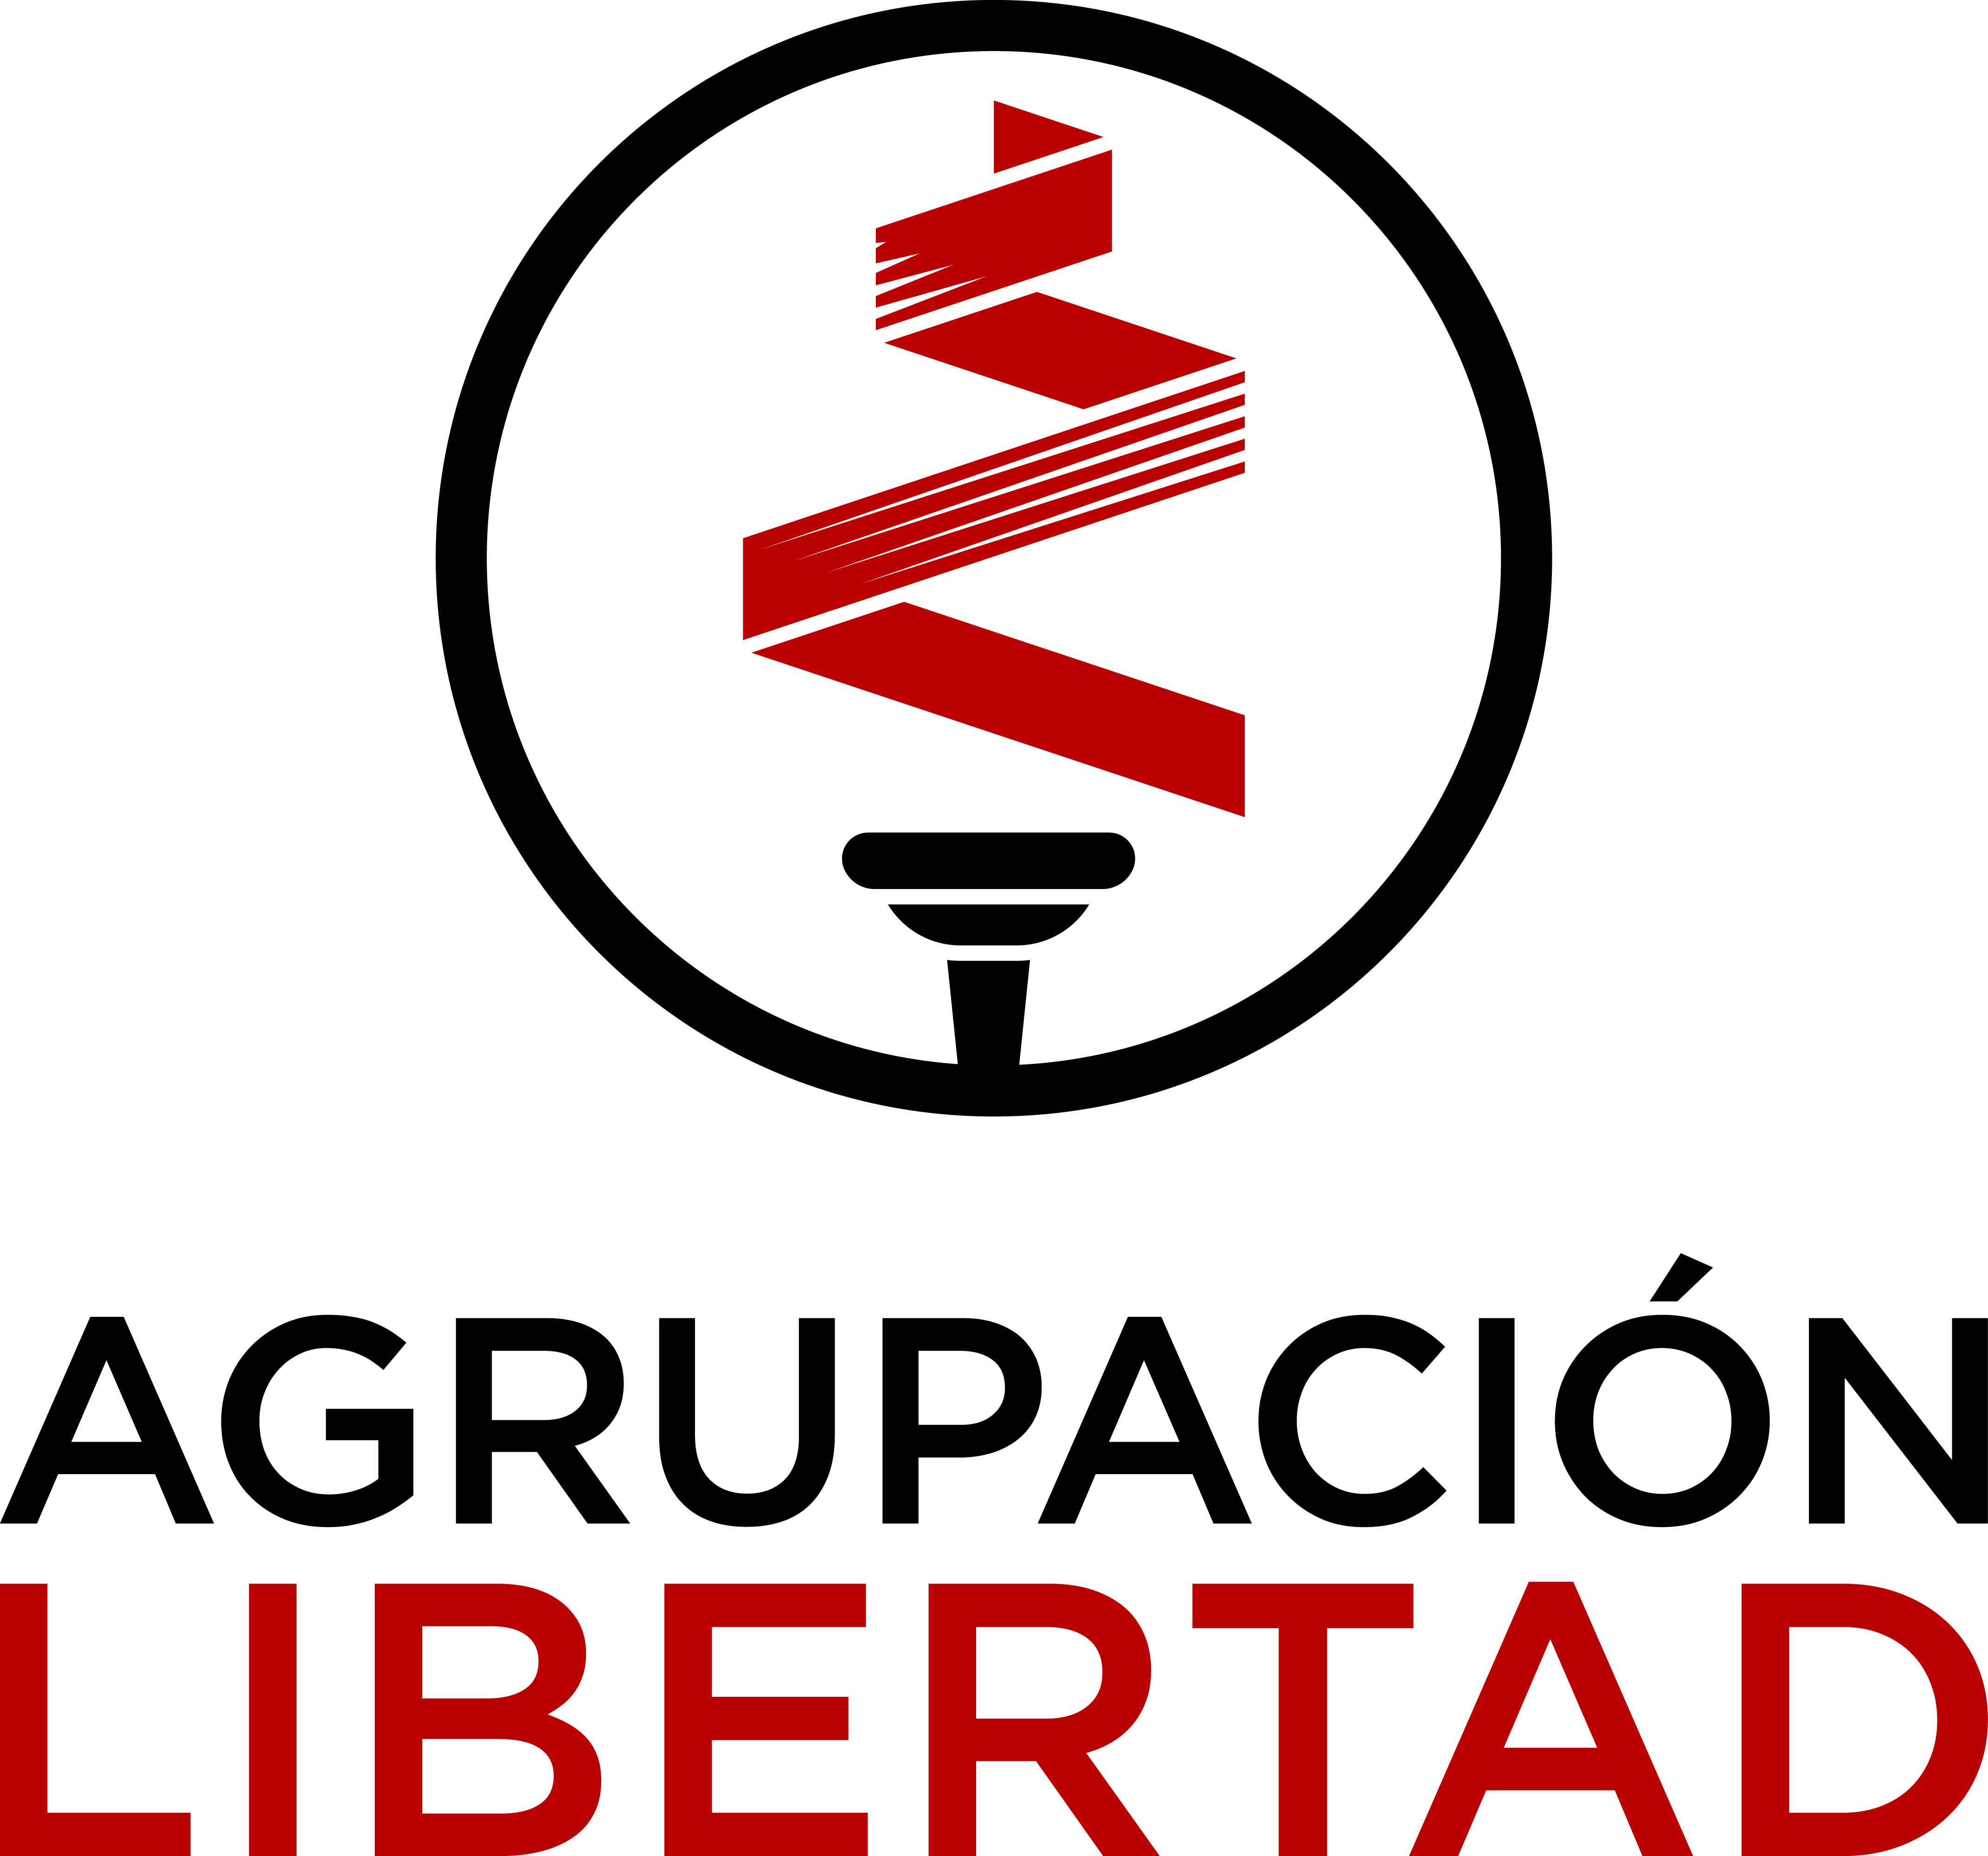 Agrupación Libertad